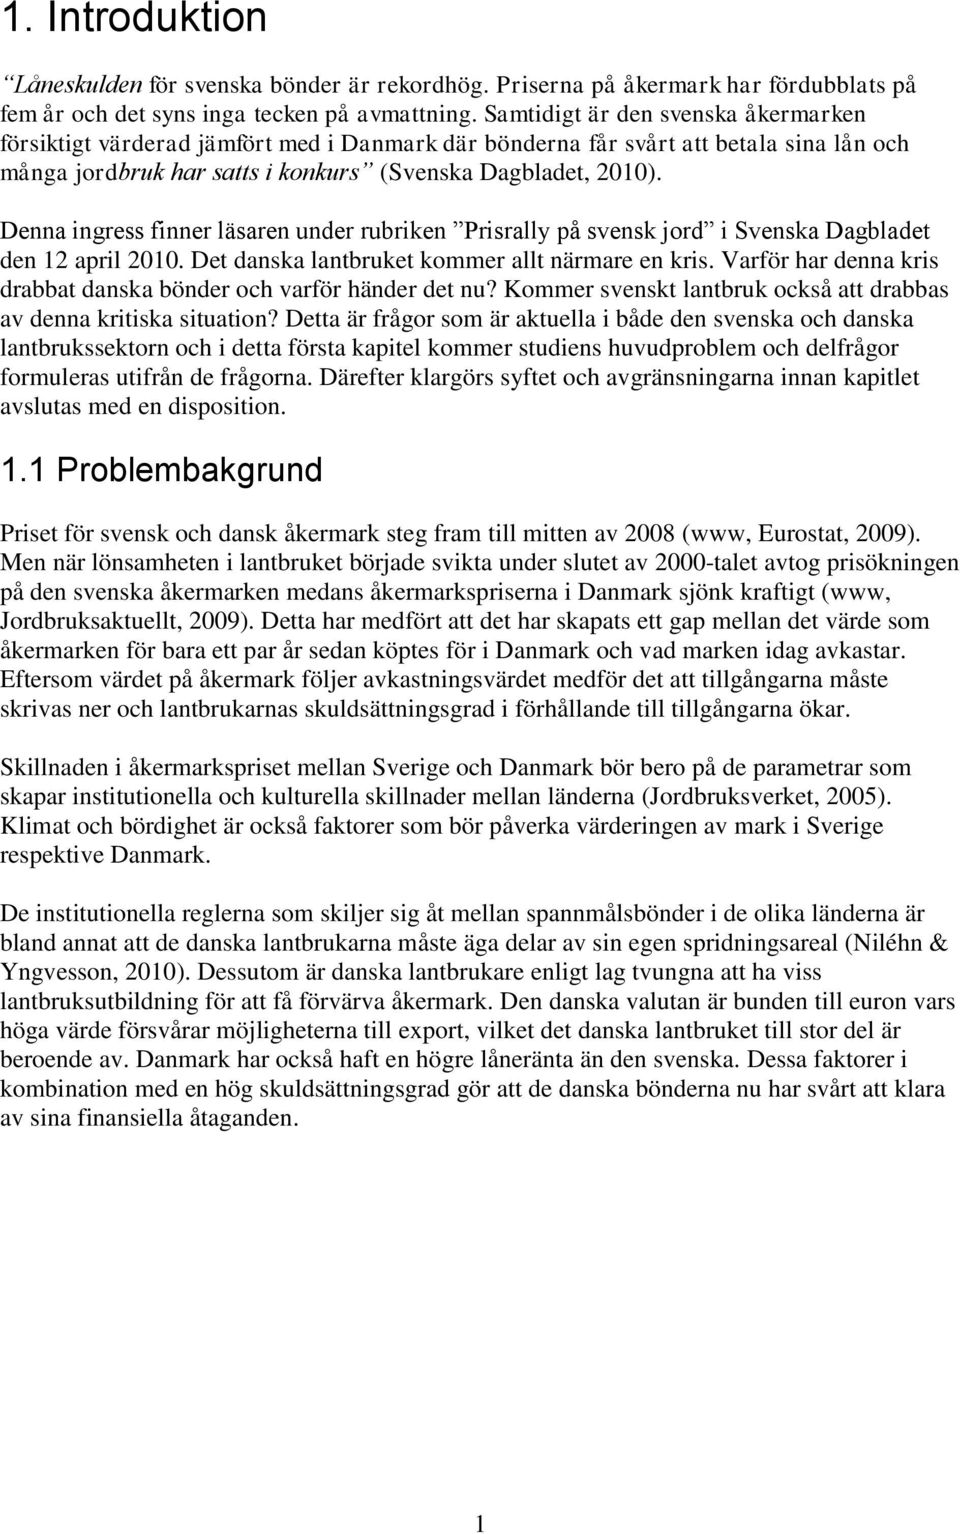 Denna ingress finner läsaren under rubriken Prisrally på svensk jord i Svenska Dagbladet den 12 april 2010. Det danska lantbruket kommer allt närmare en kris.